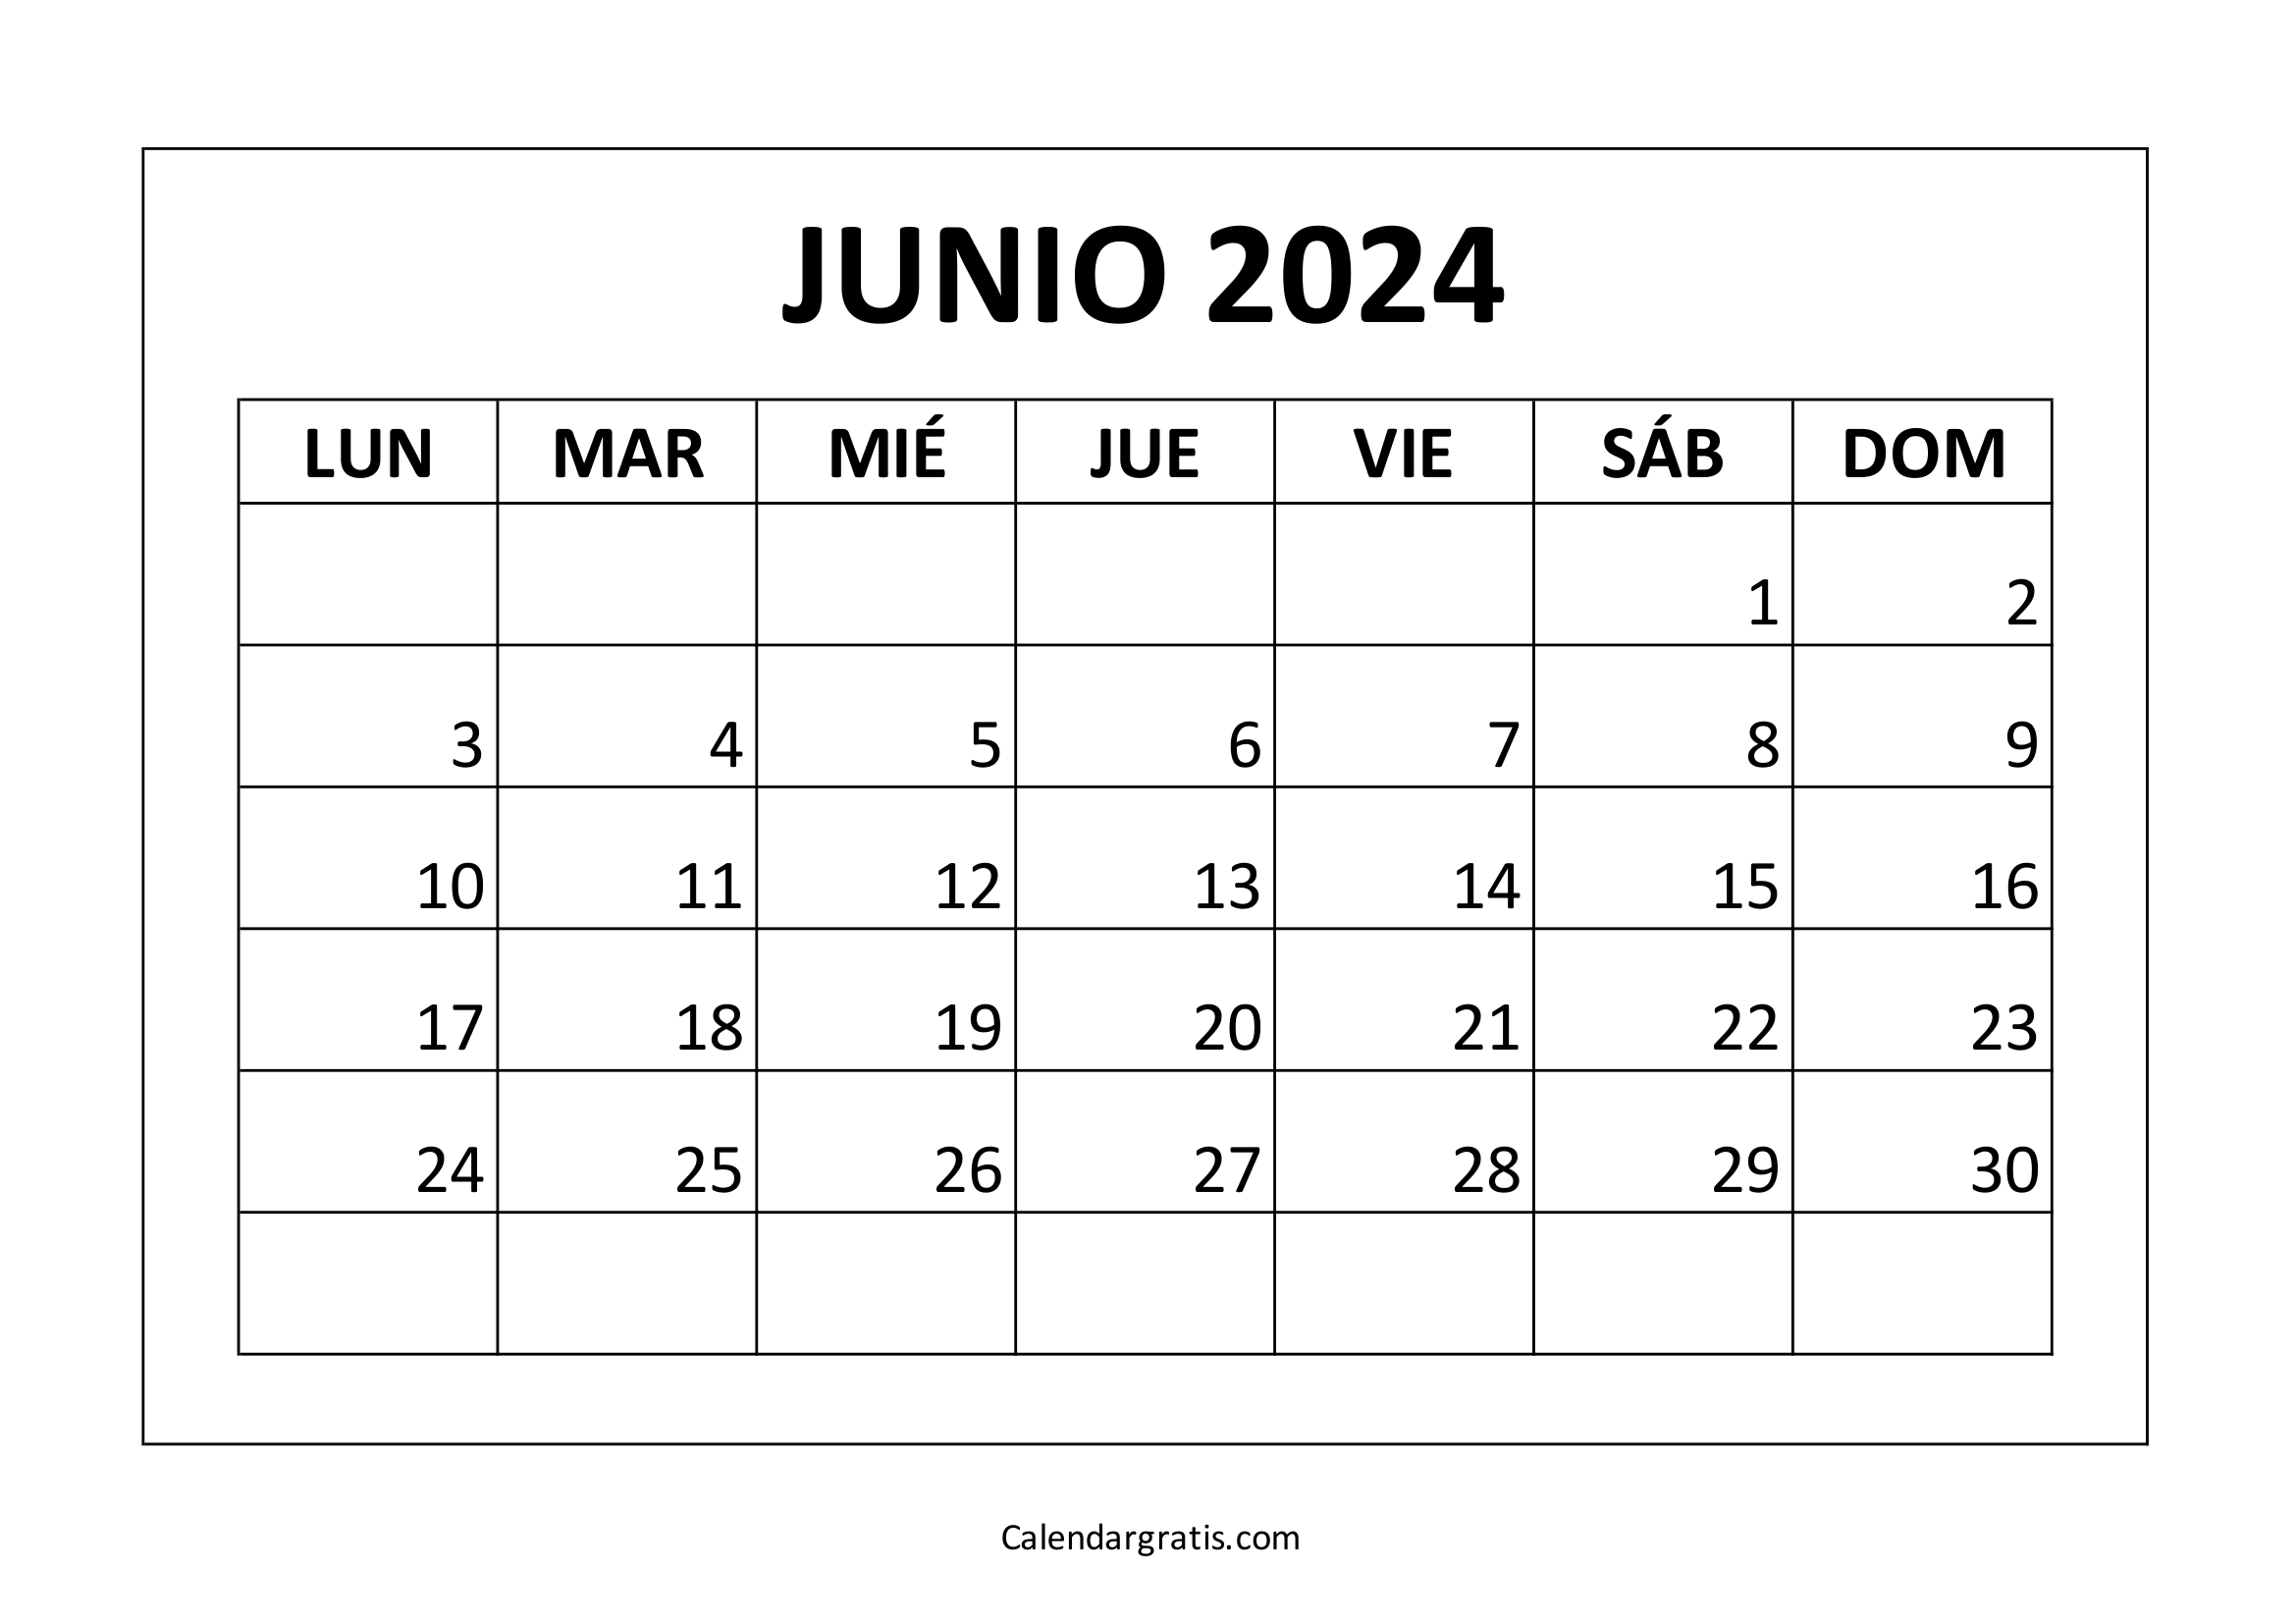 Calendario junio 2024 para imprimir